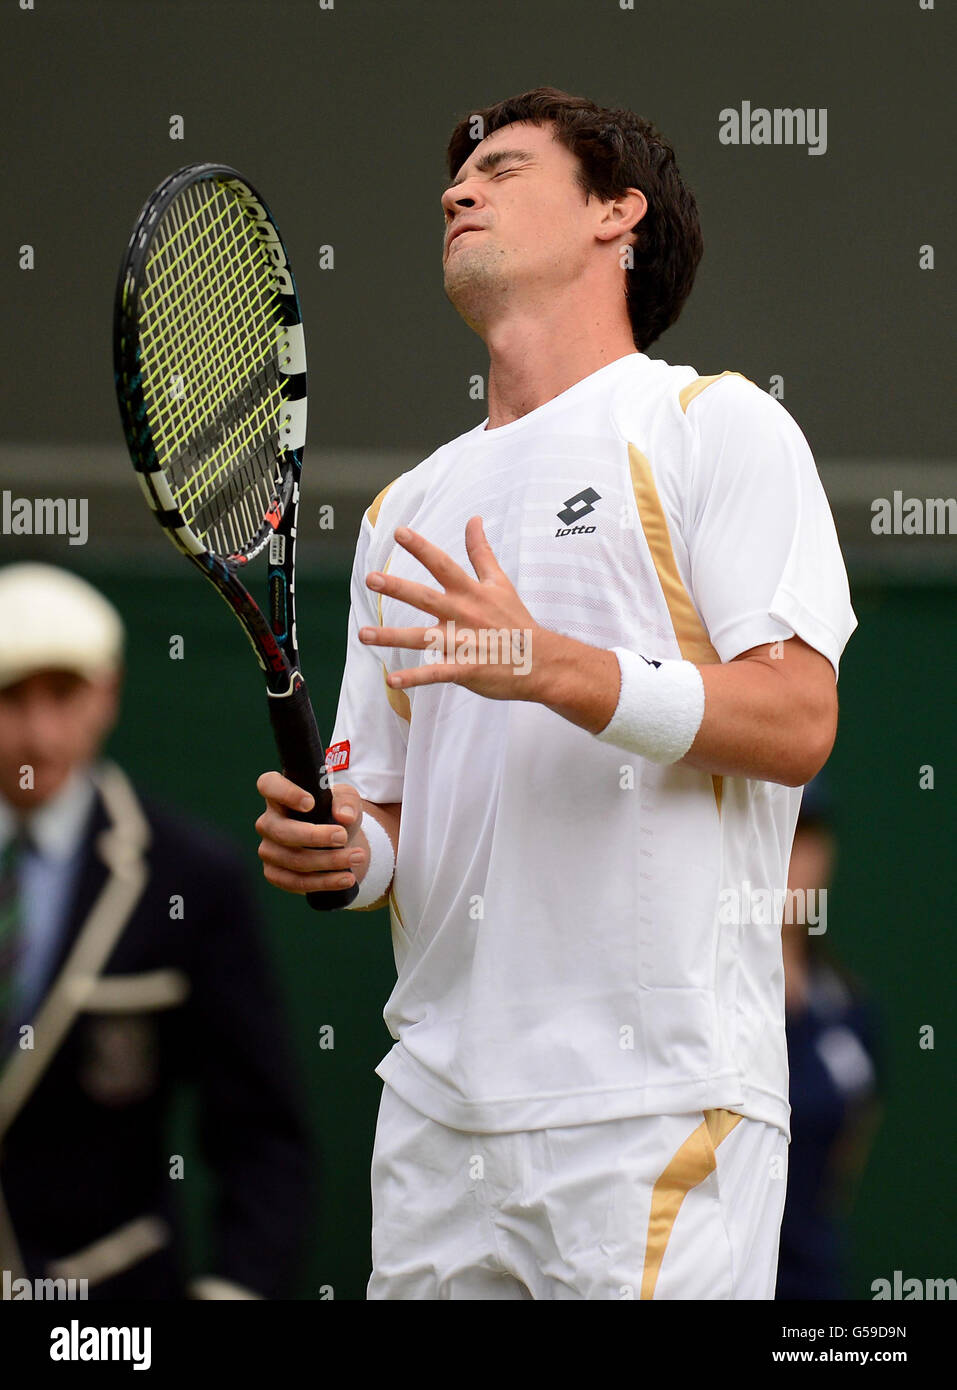 Il Jamie Baker della Gran Bretagna lascia fuori le sue frustrazioni durante la sua partita contro Andy Roddick degli Stati Uniti il terzo giorno dei Campionati di Wimbledon 2012 all'All England Lawn Tennis Club, Wimbledon. Foto Stock